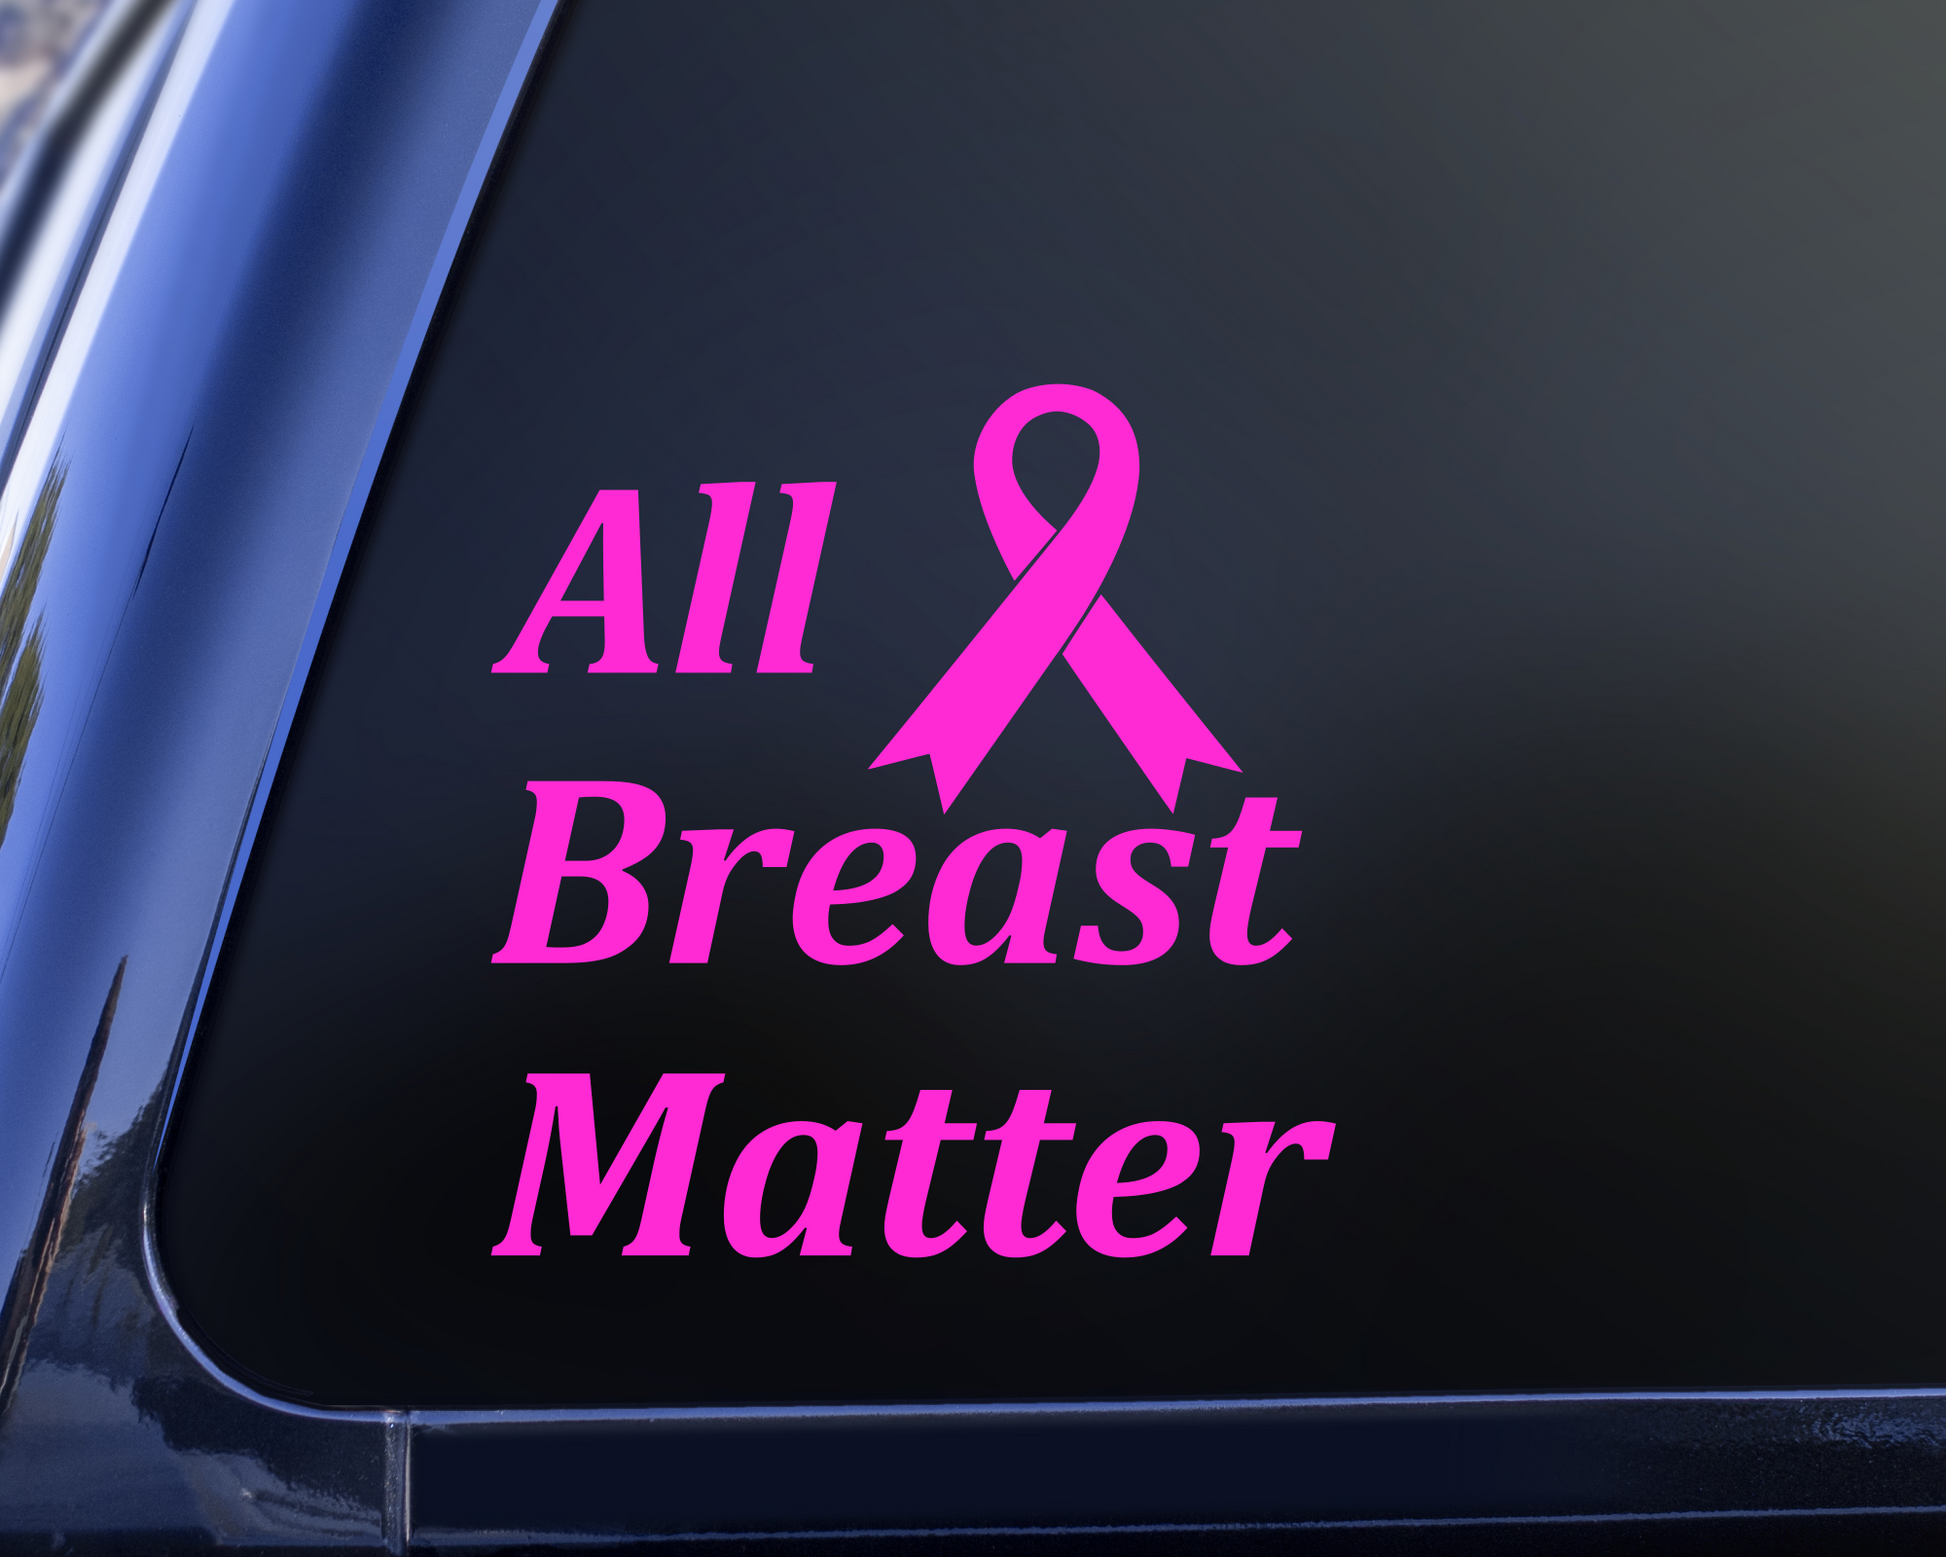 All Breat Matter cancer awareness decal